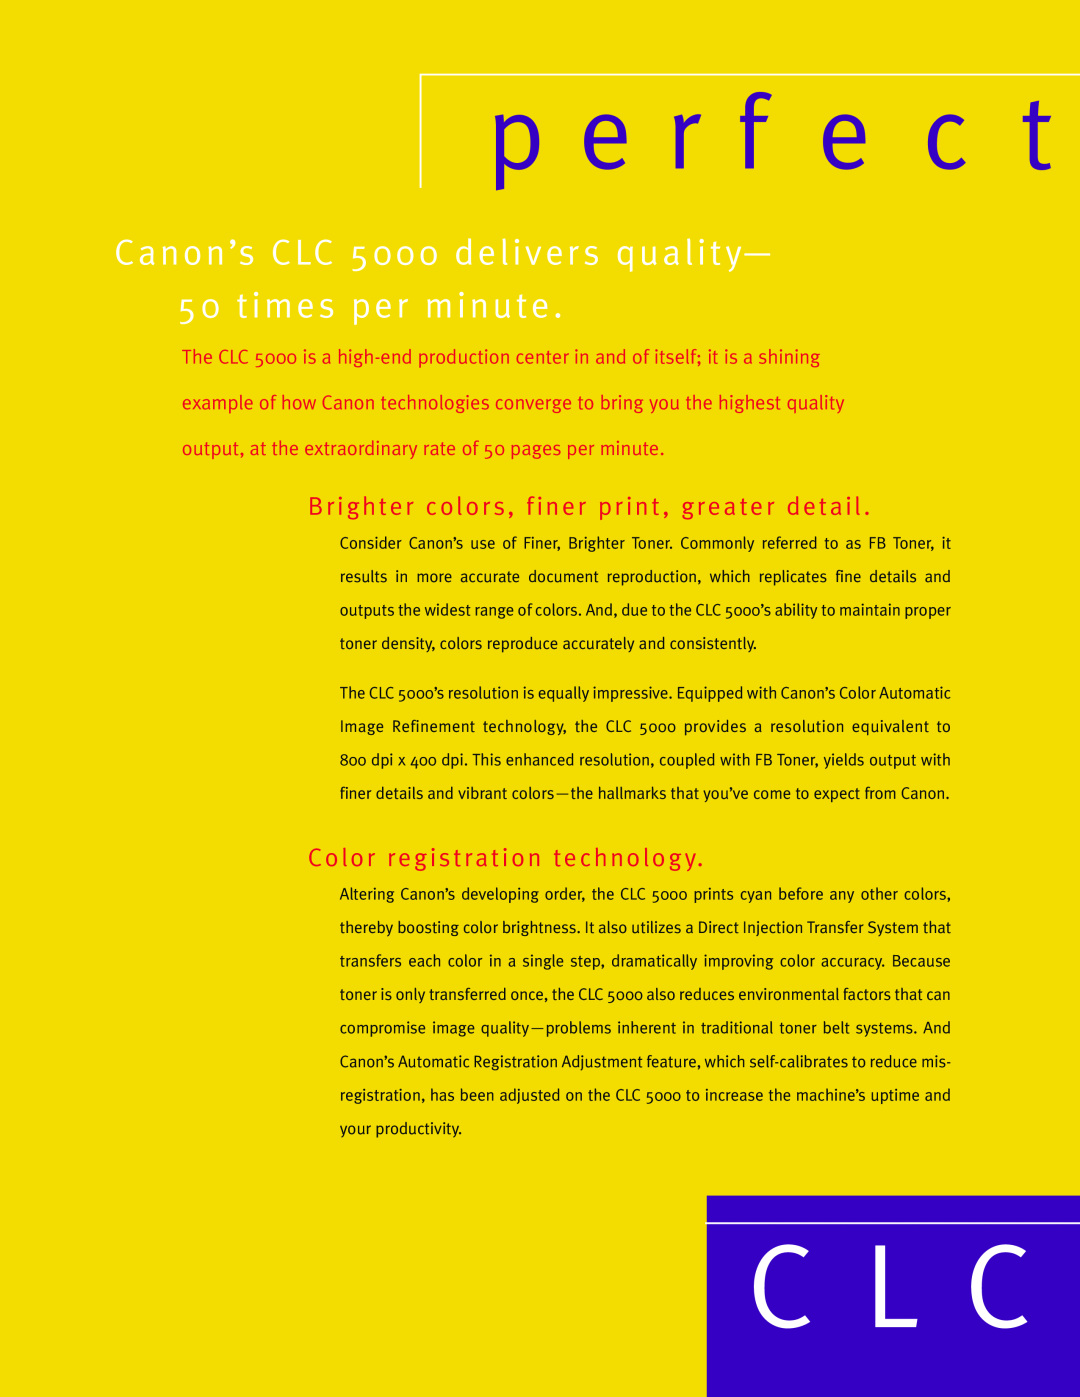 Canon 55E manual C L C, p e r f e c t, Brighter colors, finer print, greater detail, Color registration technology 